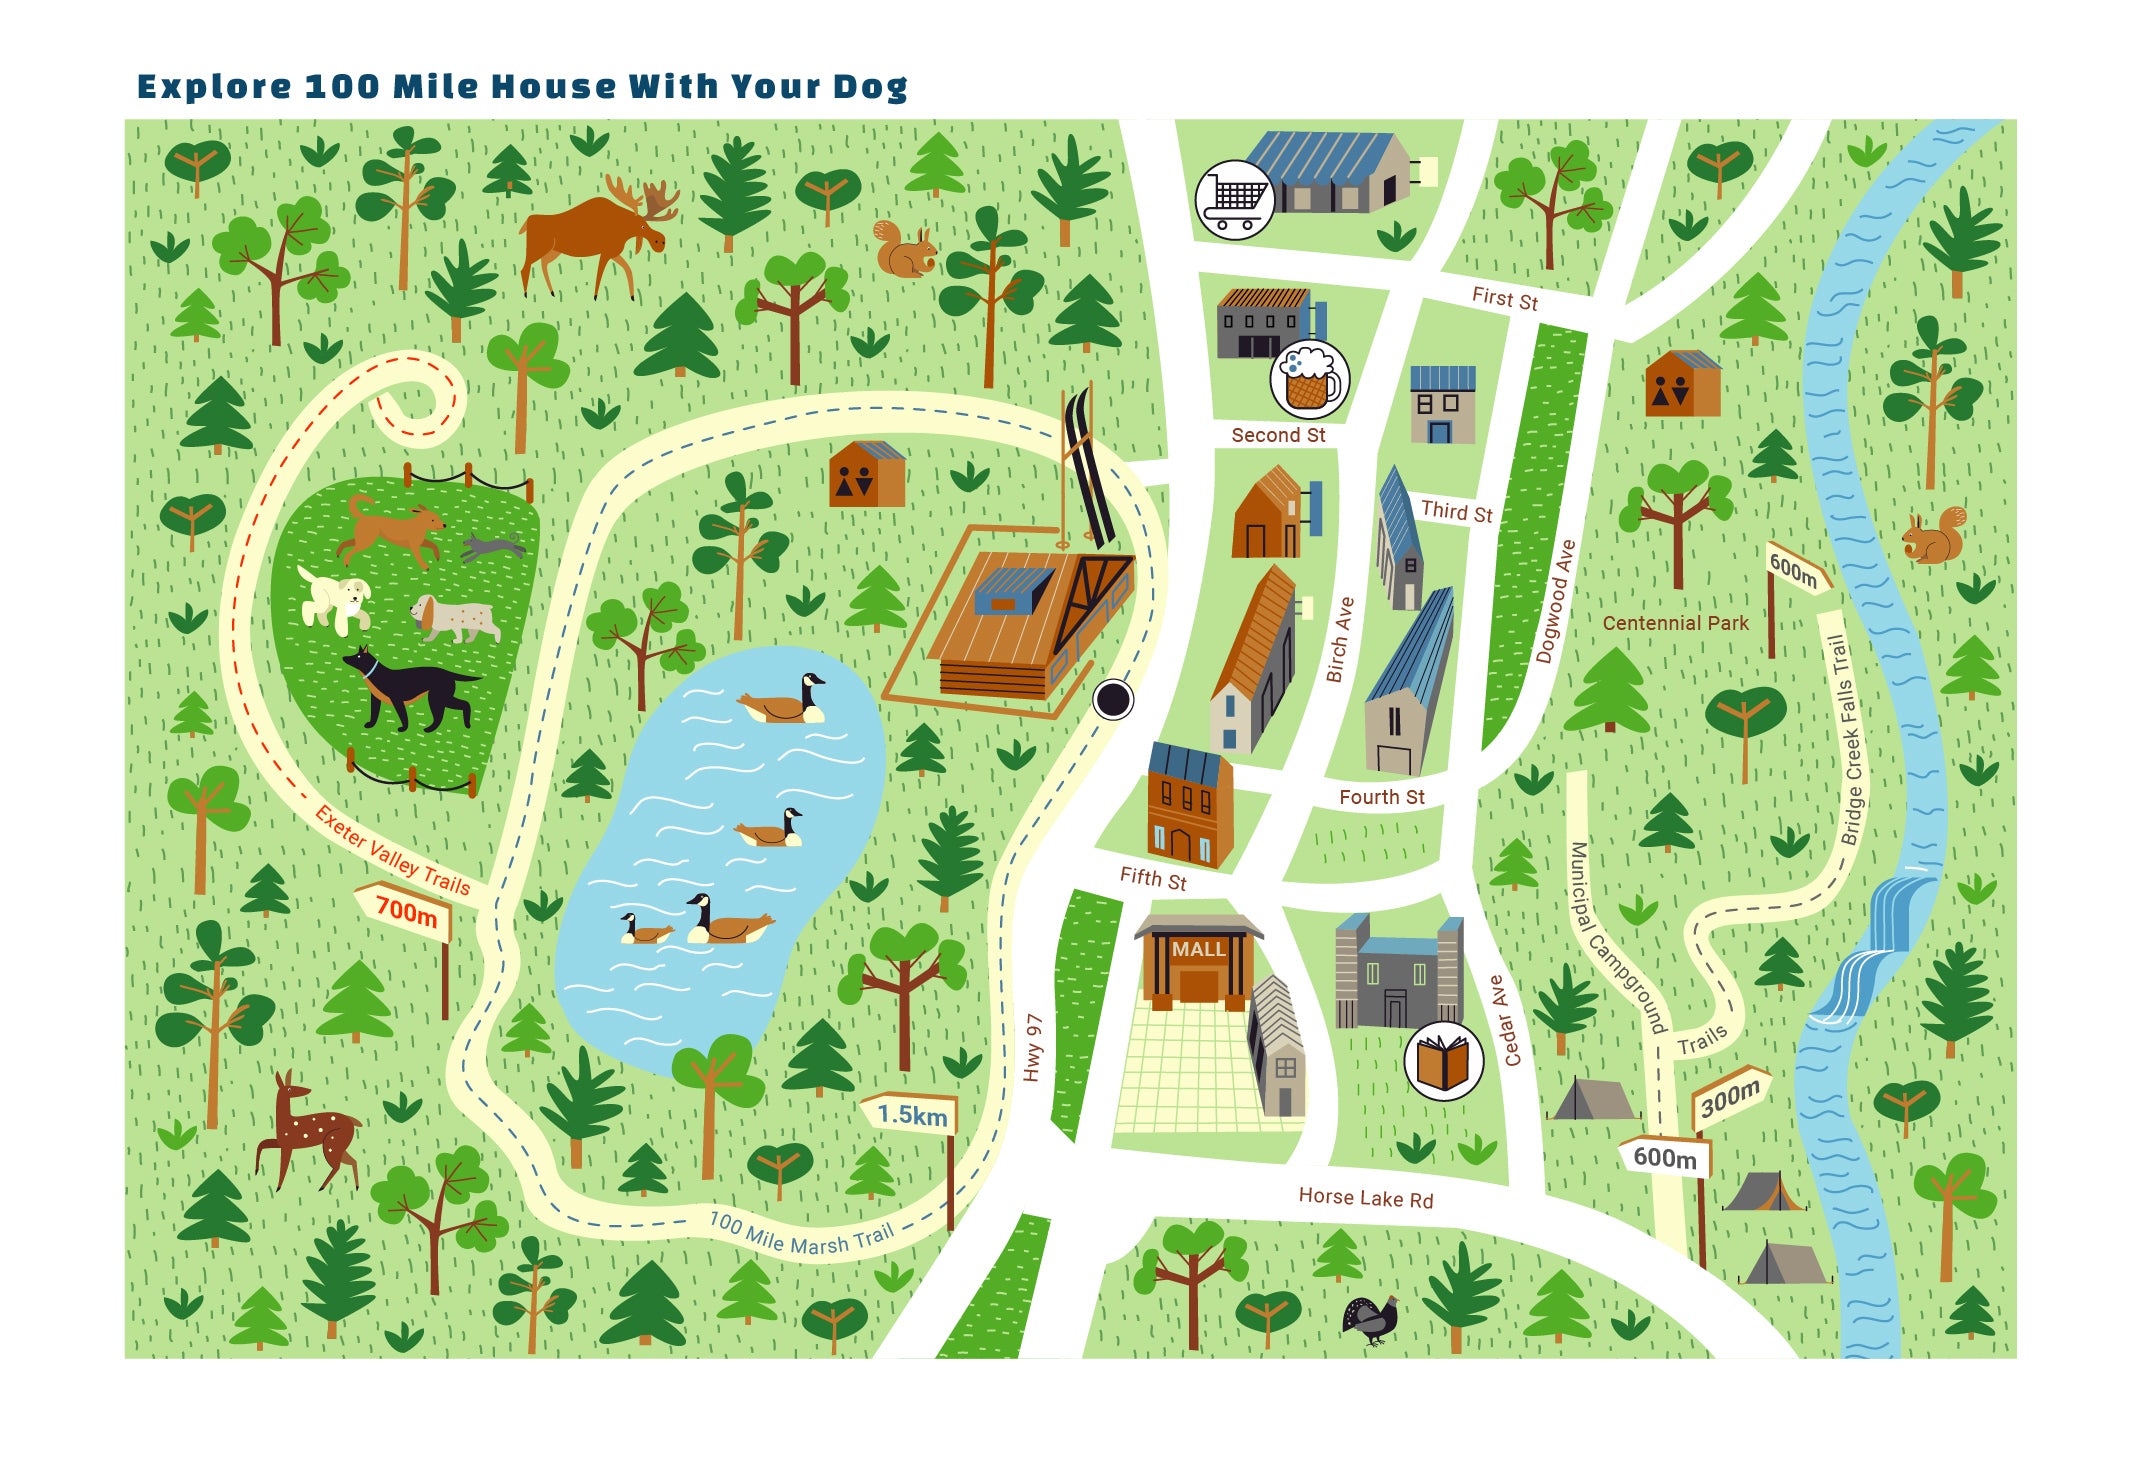 100 Mile House Dog Stroller Map